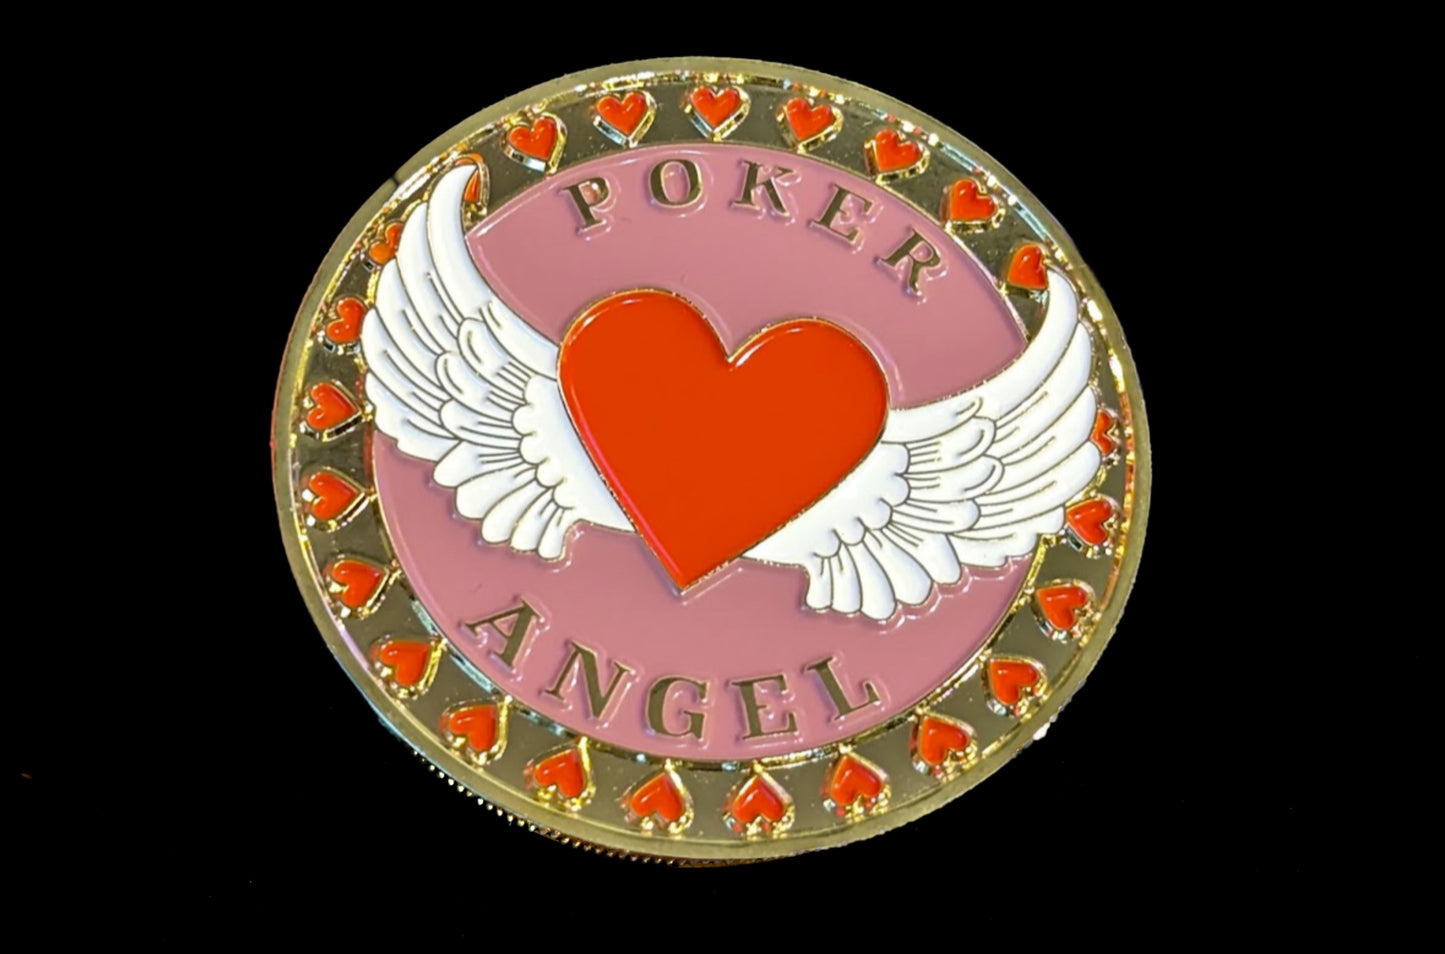 Poker Angel coin